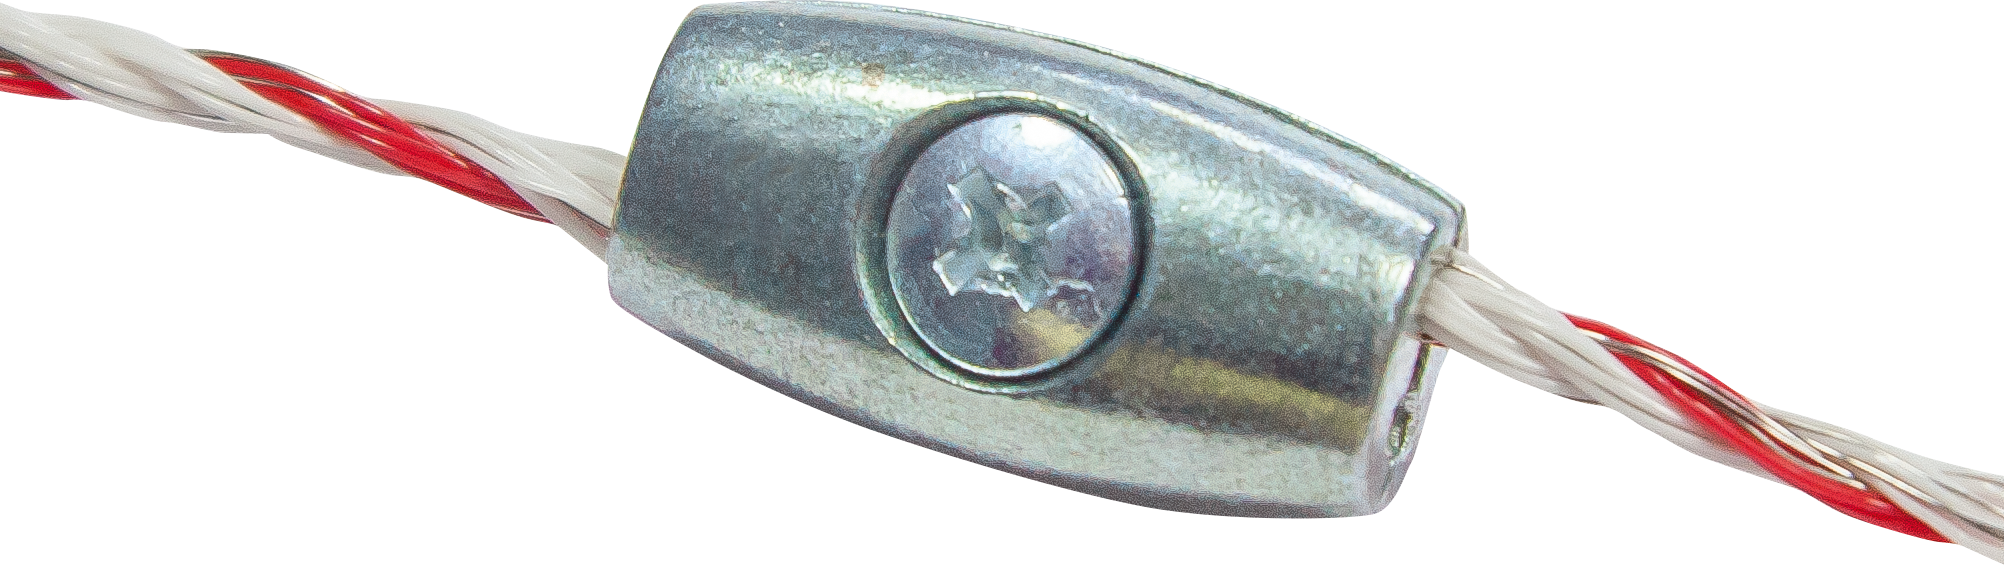 Draadklem verzinkt voor Lint tot 2,5 mm (5 st.)